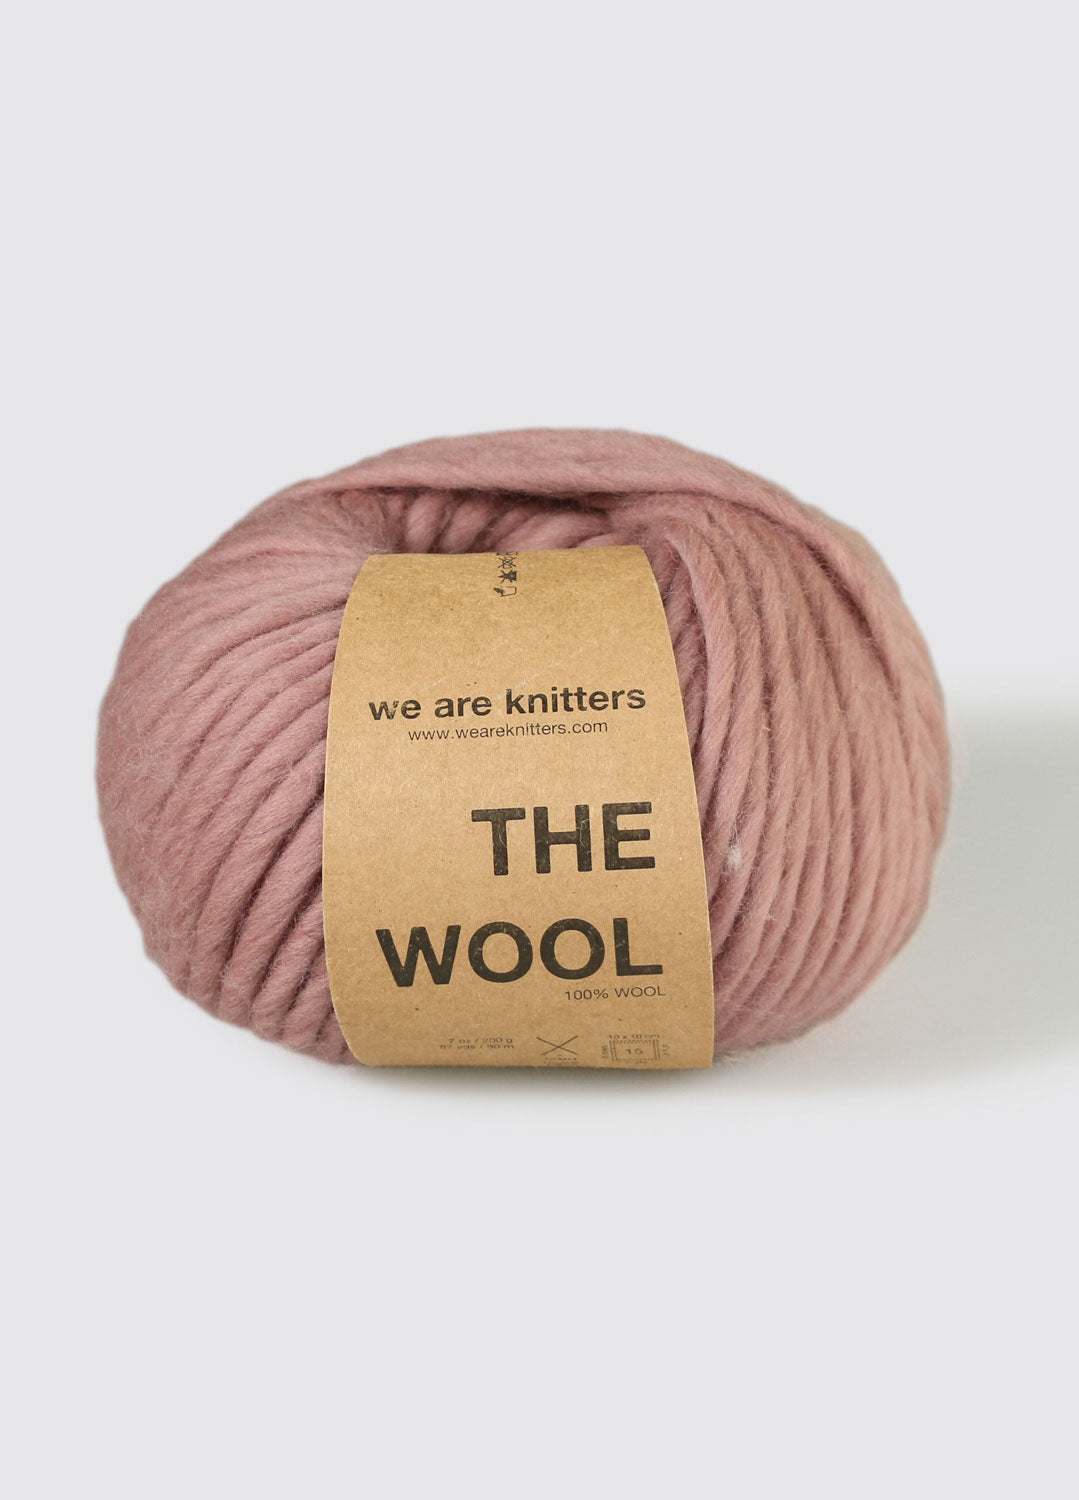 Crochet Hook 15mm Salmon (Pink) – STATEMENT JUNKIE YARN CO.